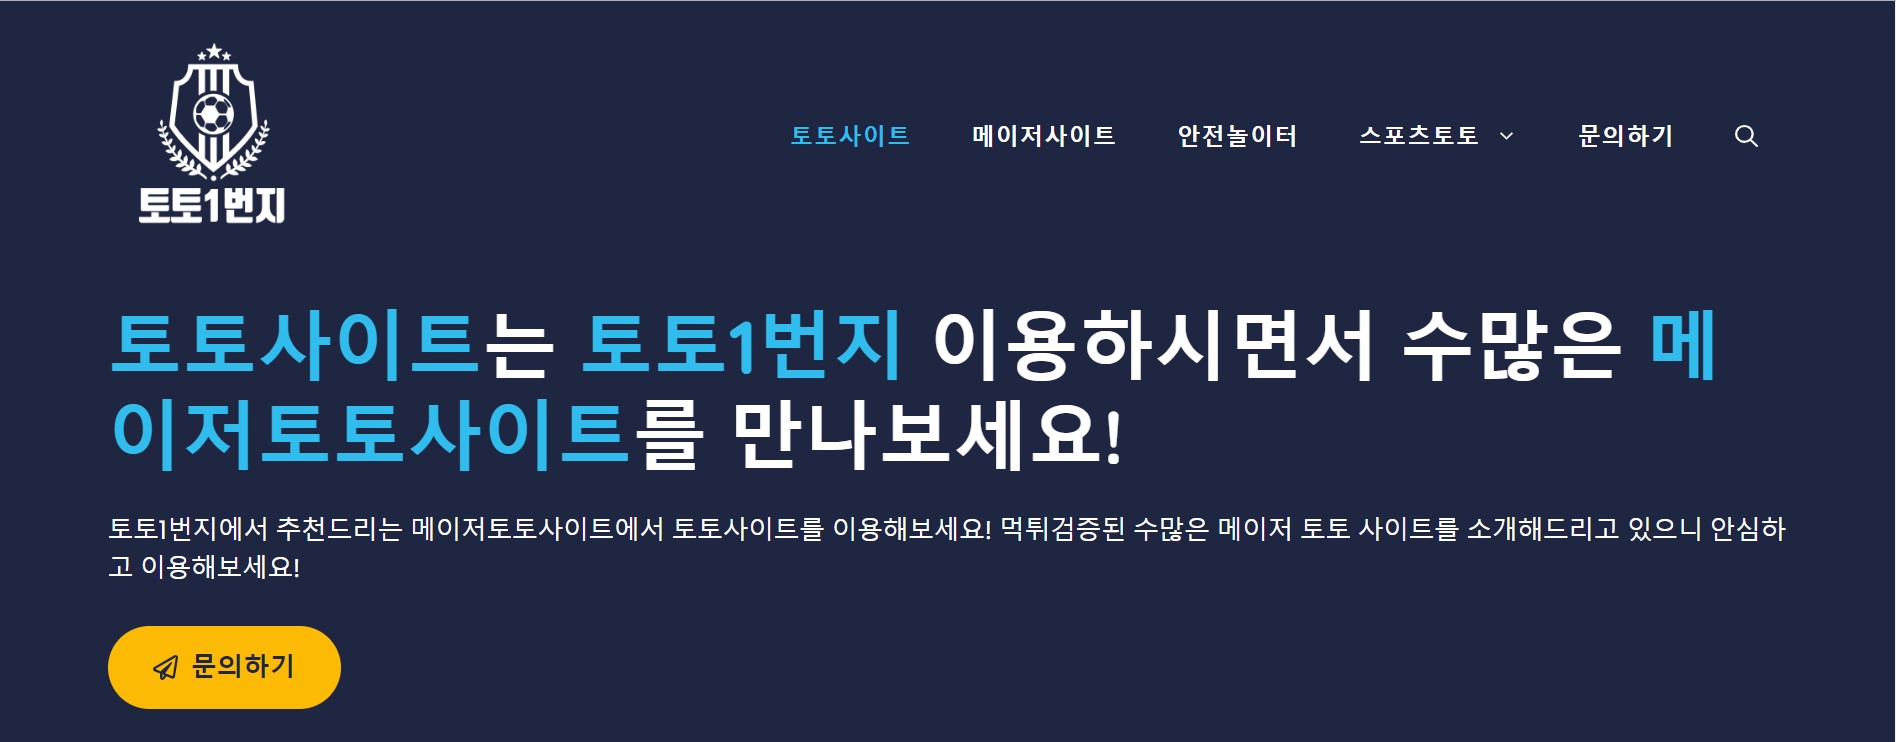 한국에서 성공적인 온라인 스포츠 베팅을 위한 팁과 요령